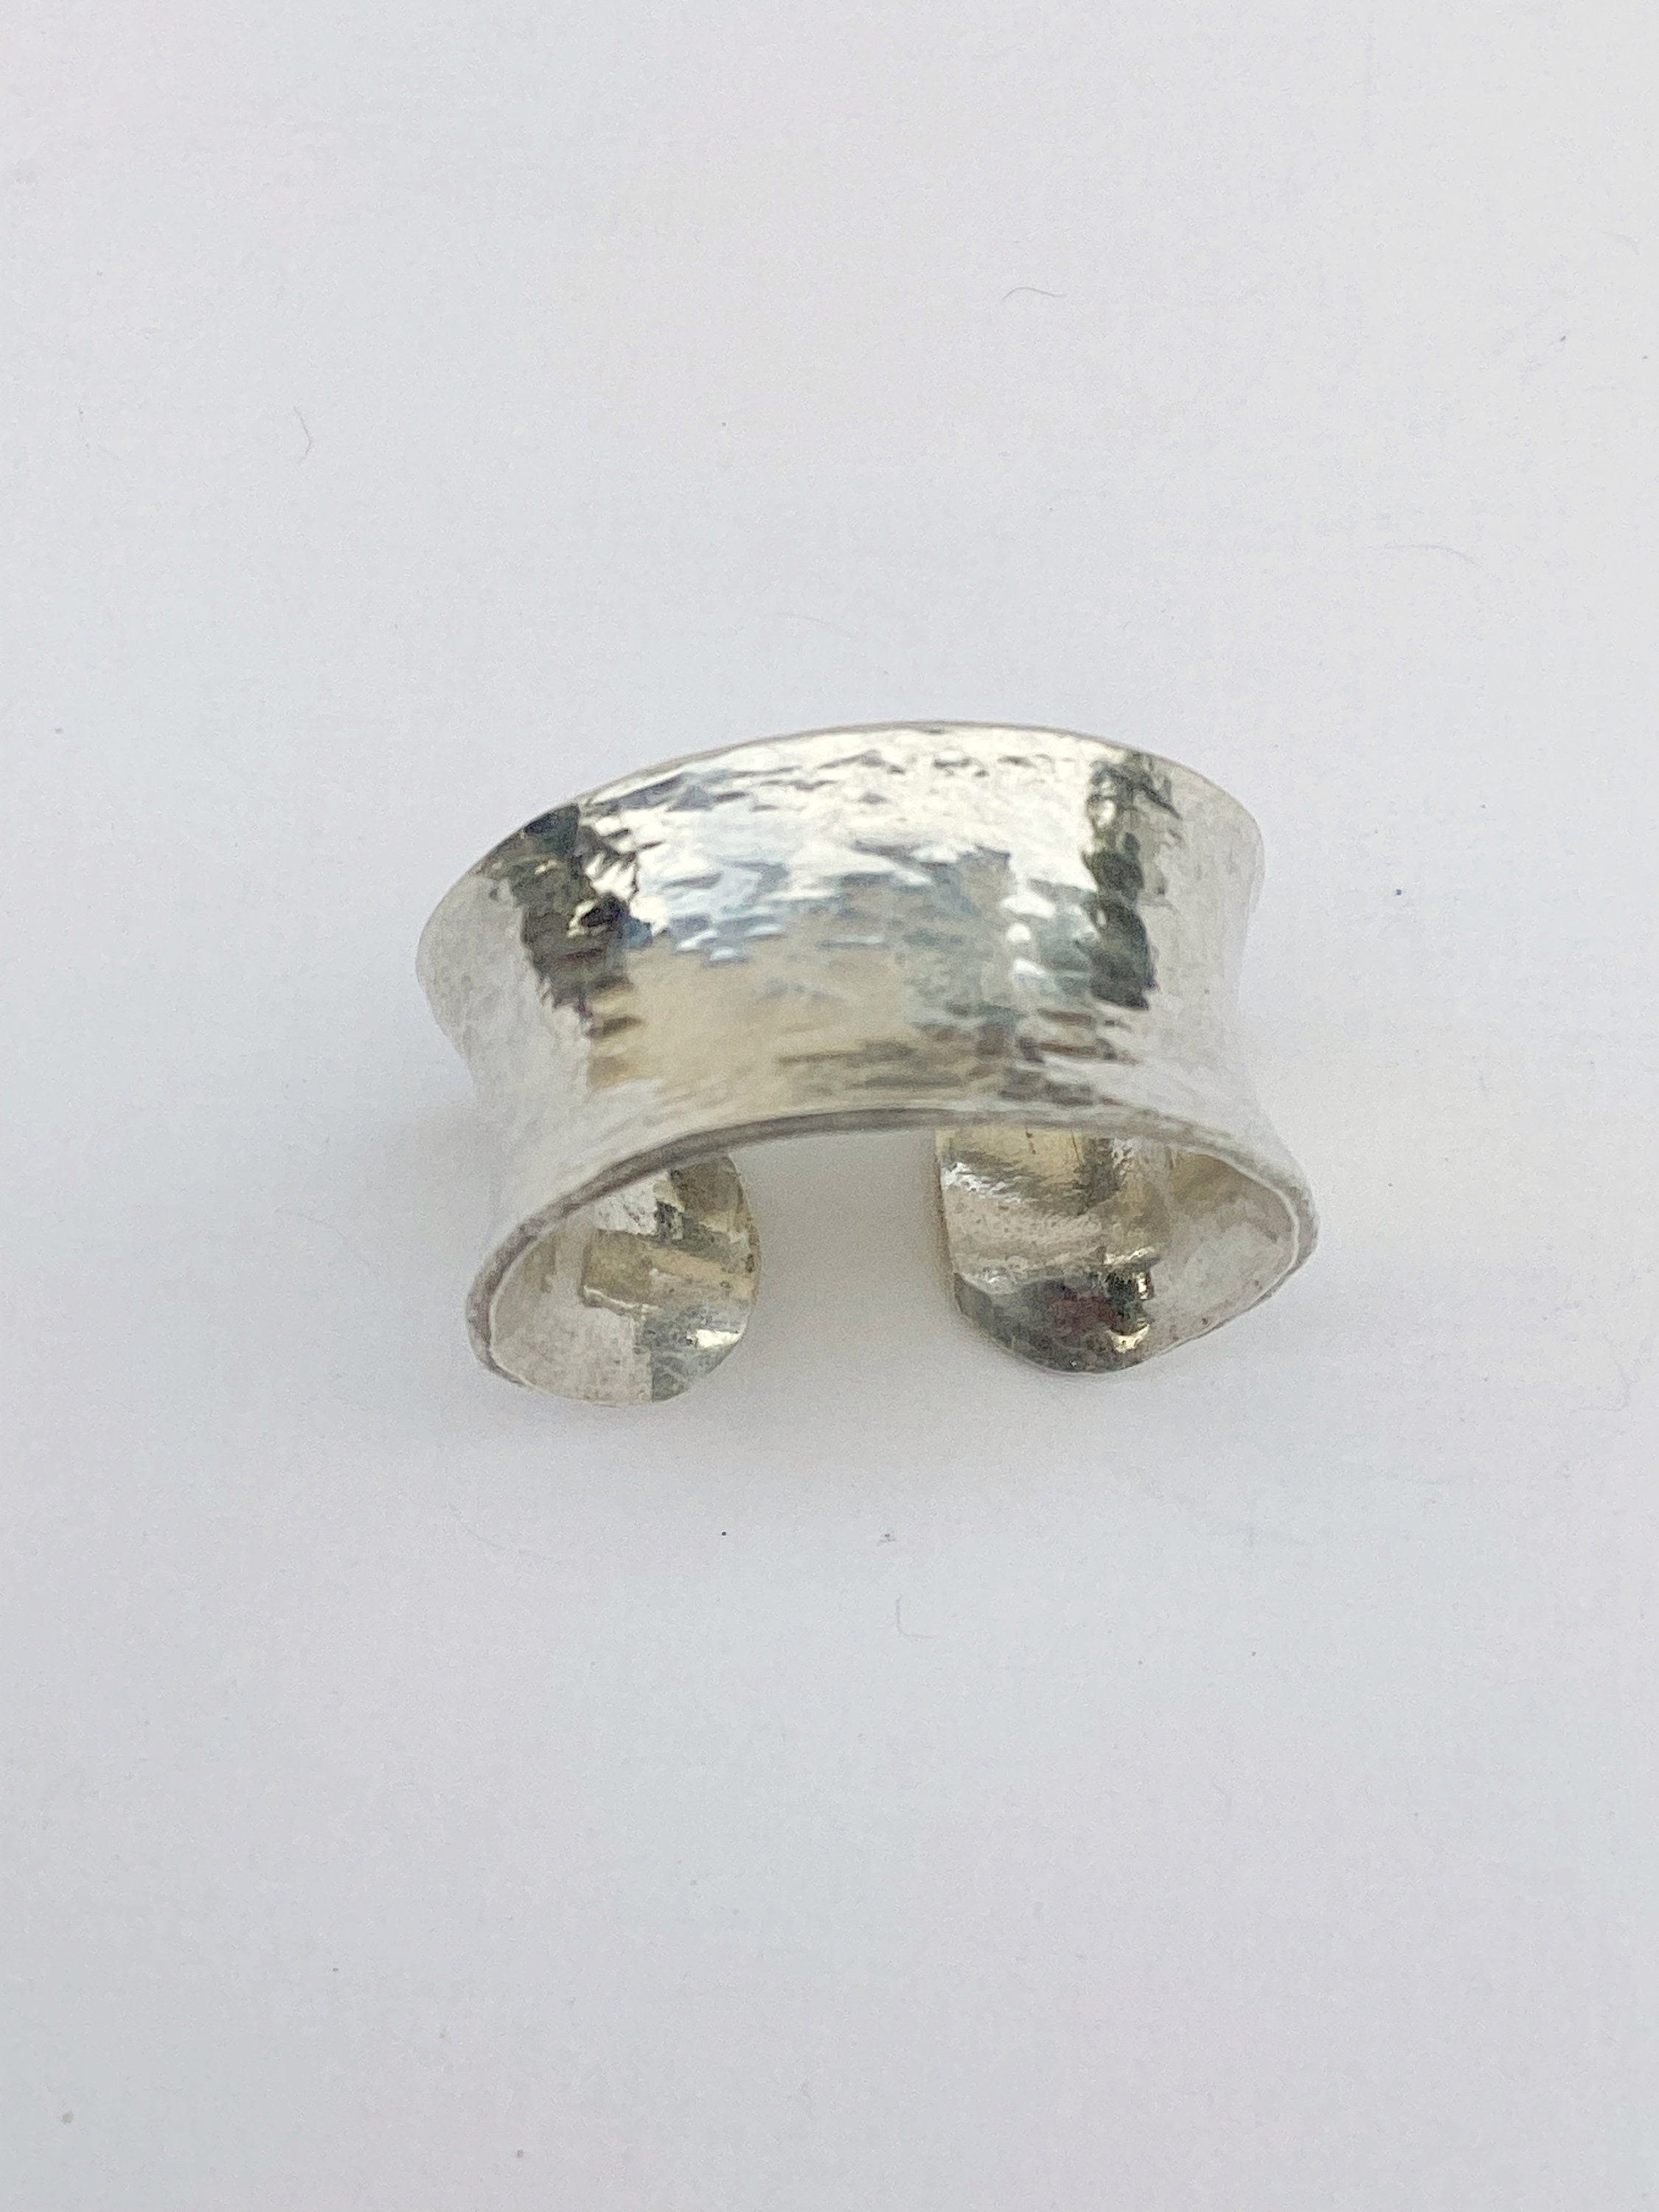 Precious Metal Silver Clay, 999 Fine Silver, Handcrafted 